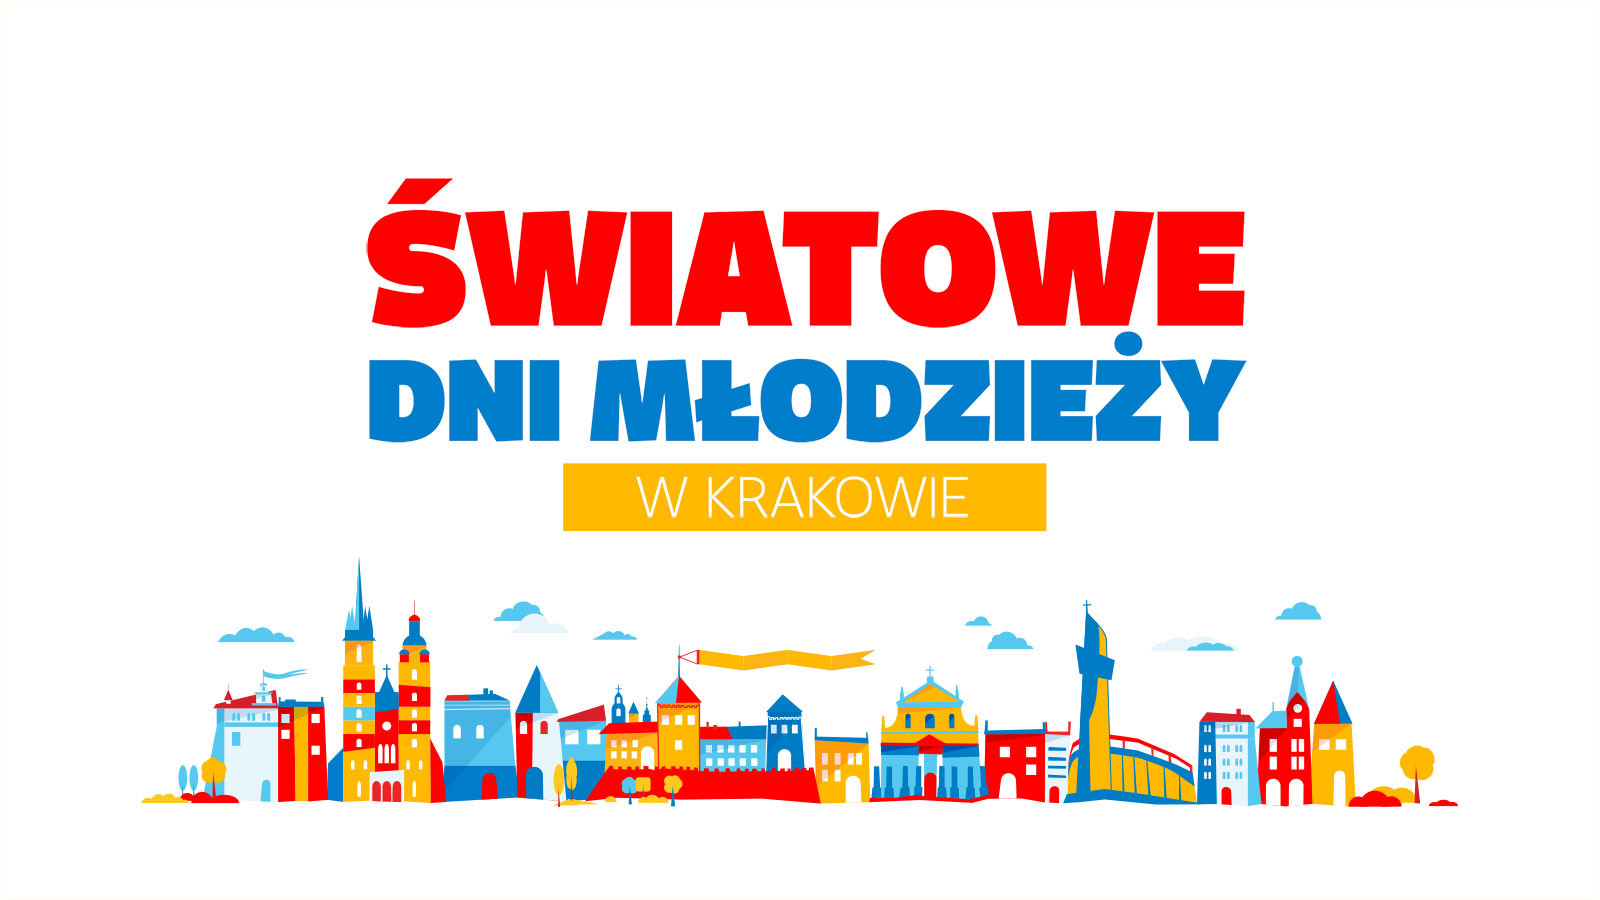 Światowe Dni Młodzieży Kraków 2016. Wybrane wyniki badań